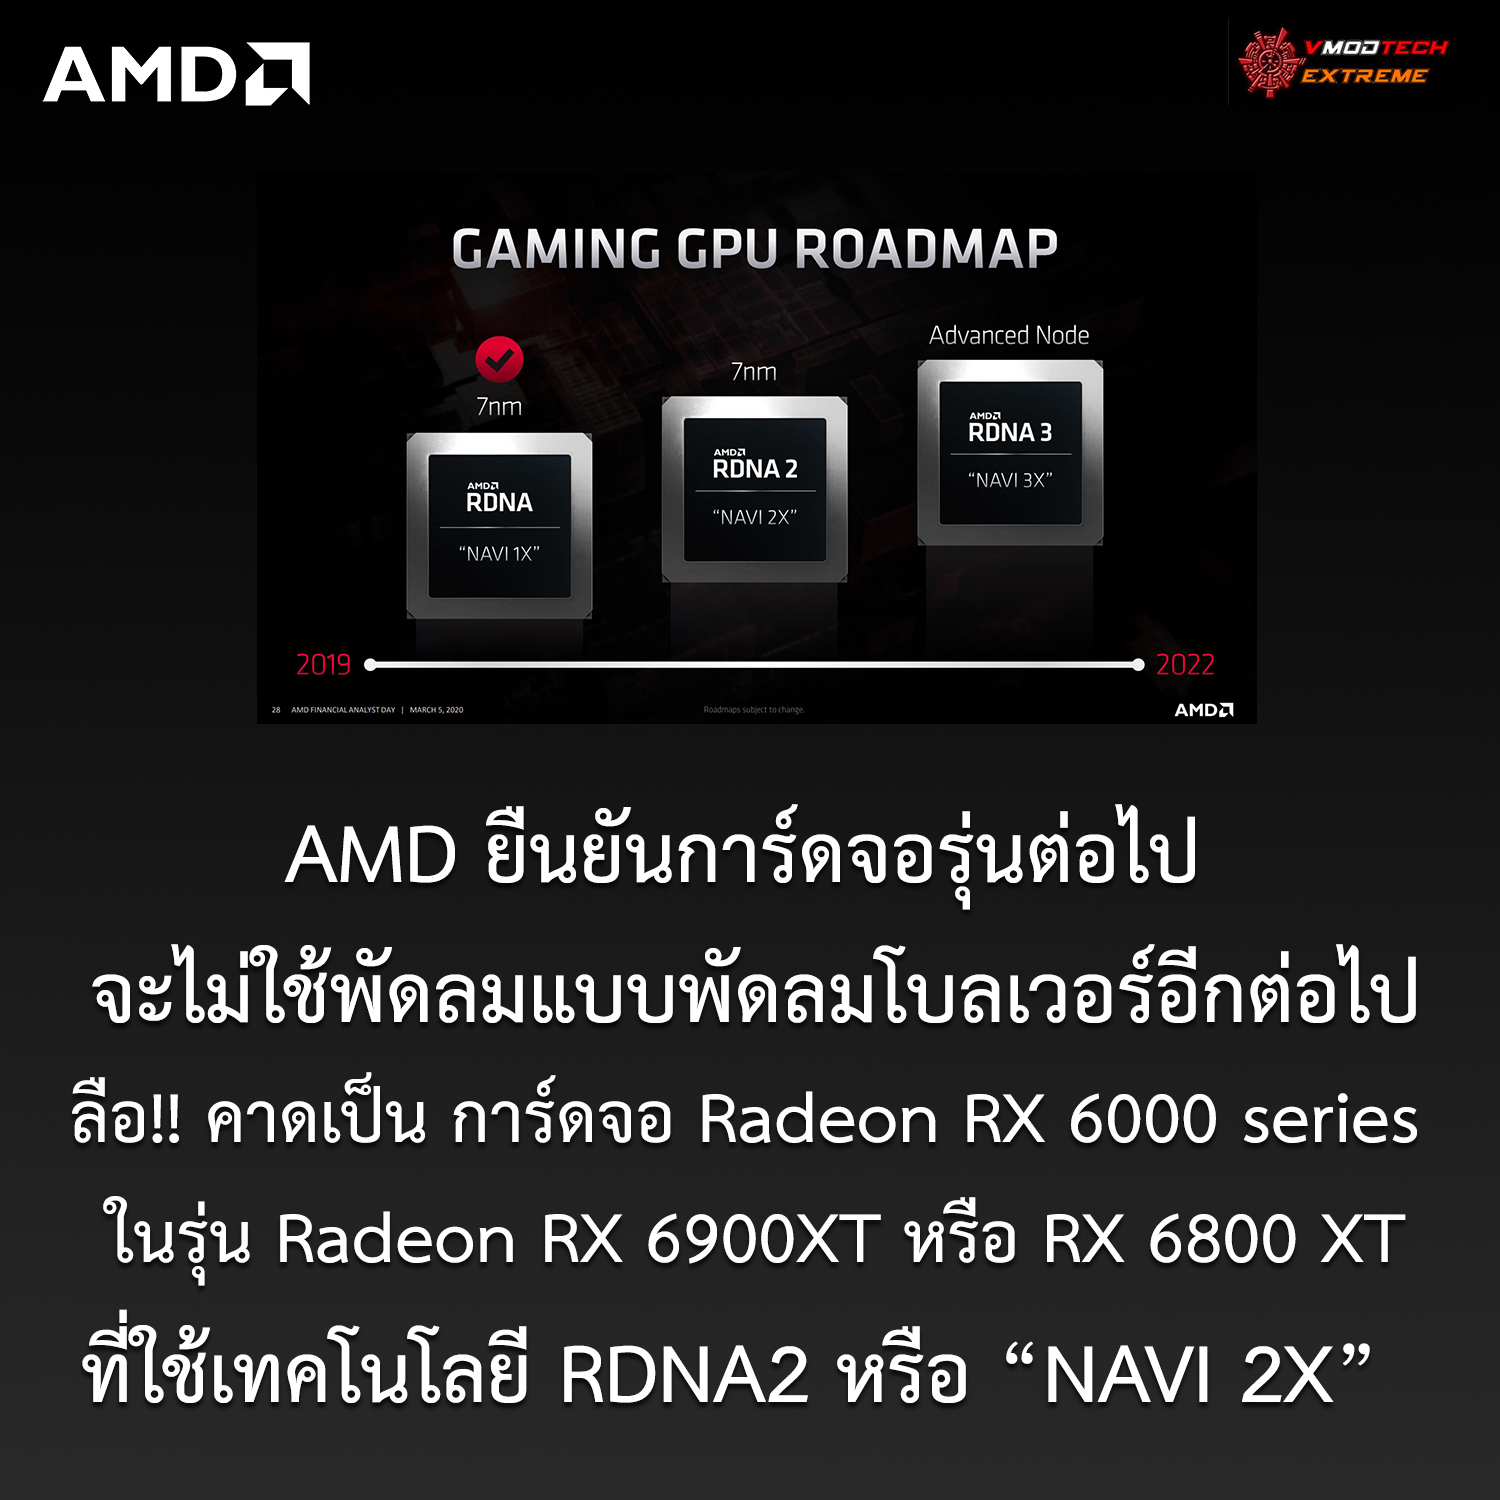 amd no reference blower navi 2x AMD ยืนยันการ์ดจอรุ่นต่อไปของทาง AMD จะไม่ใช้พัดลมแบบพัดลมโบลเวอร์อีกต่อไป